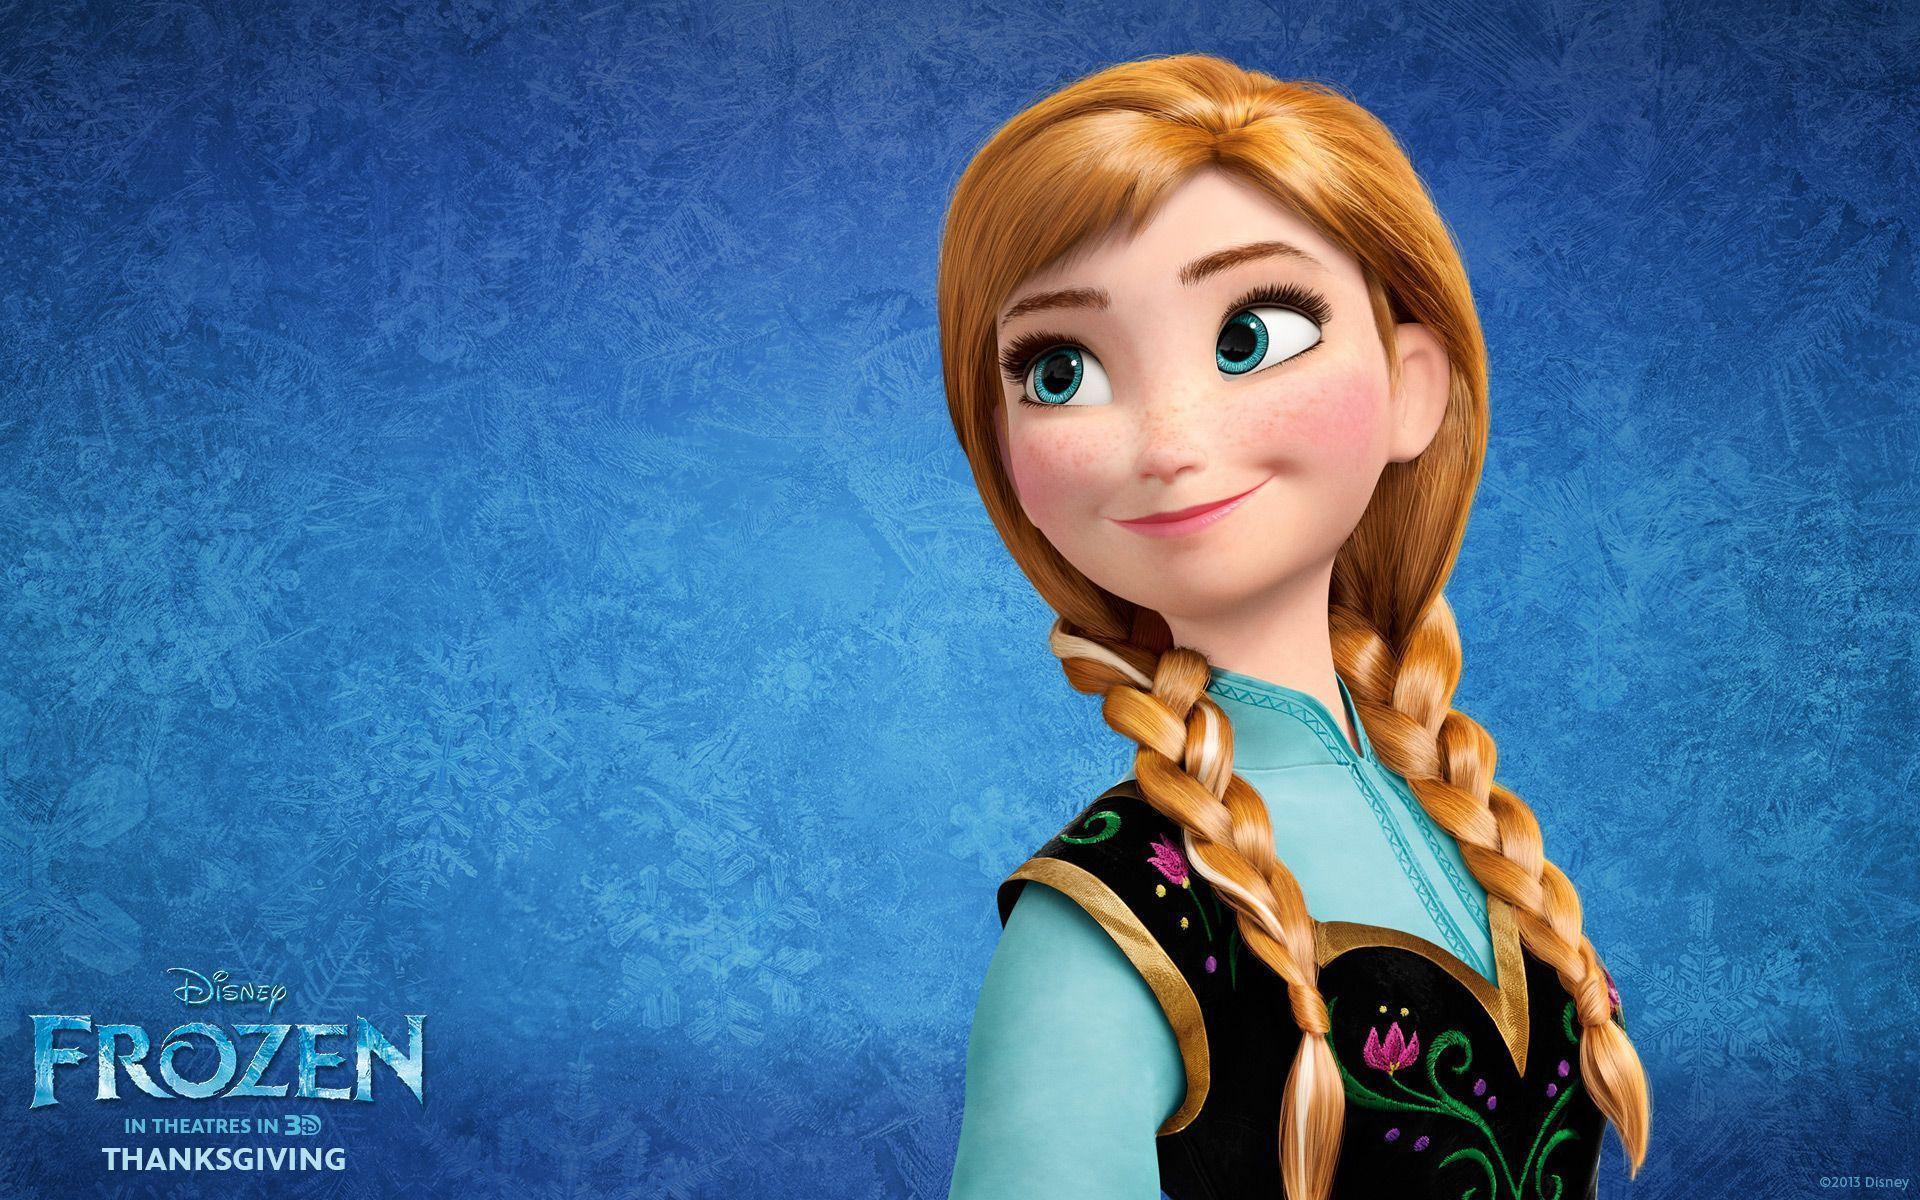 Princess Anna Frozen Wallpaper